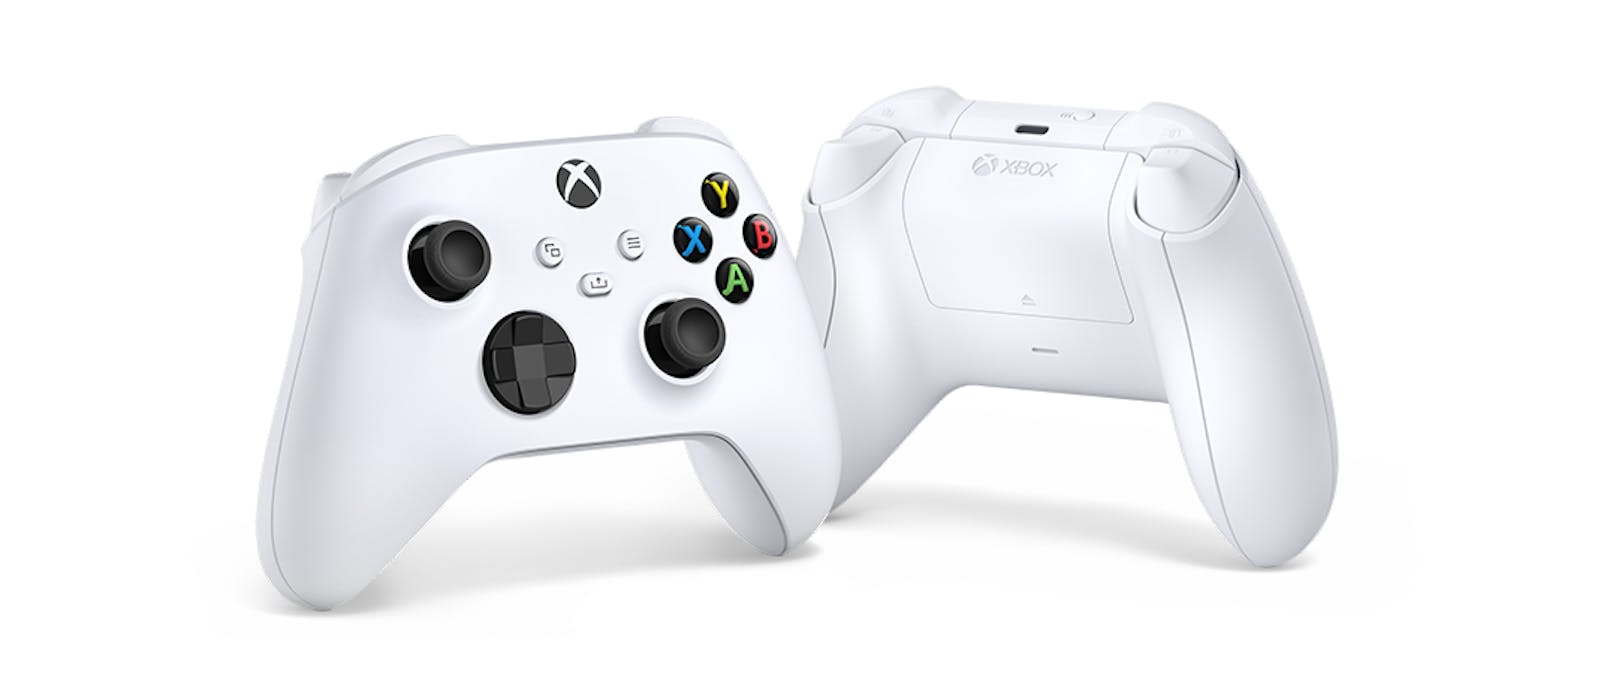 Das Gamepad entspricht weitgehend dem Xbox One-Controller. Ein Share-Button und (angenehme) Grifftexturen wurden hinzugefügt.